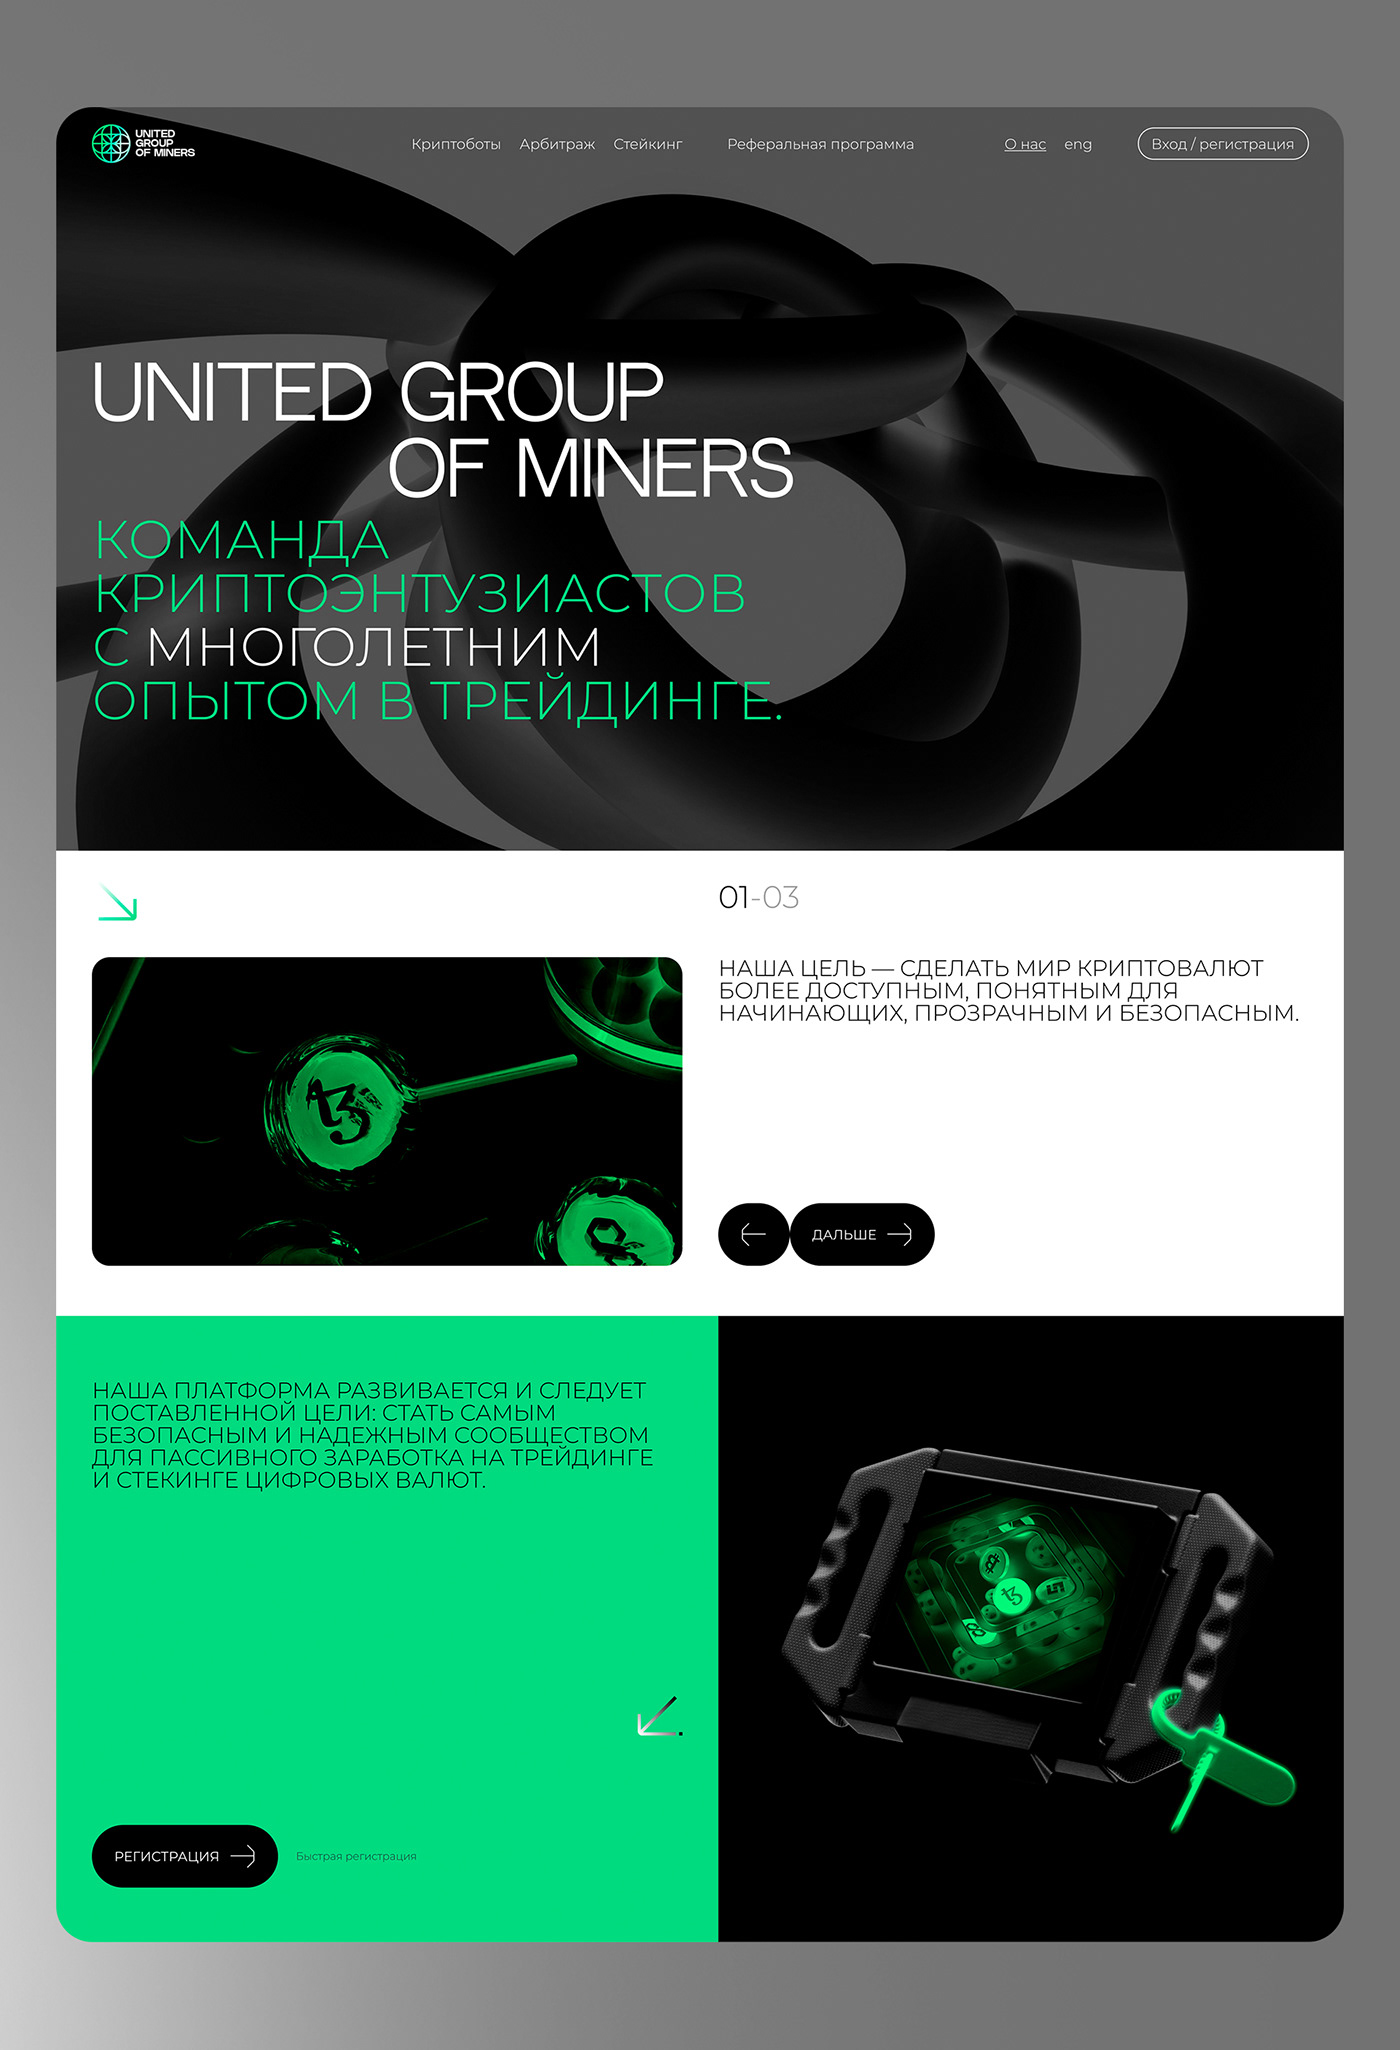 mobile phone ui design ux/ui app design logo design graphic design 